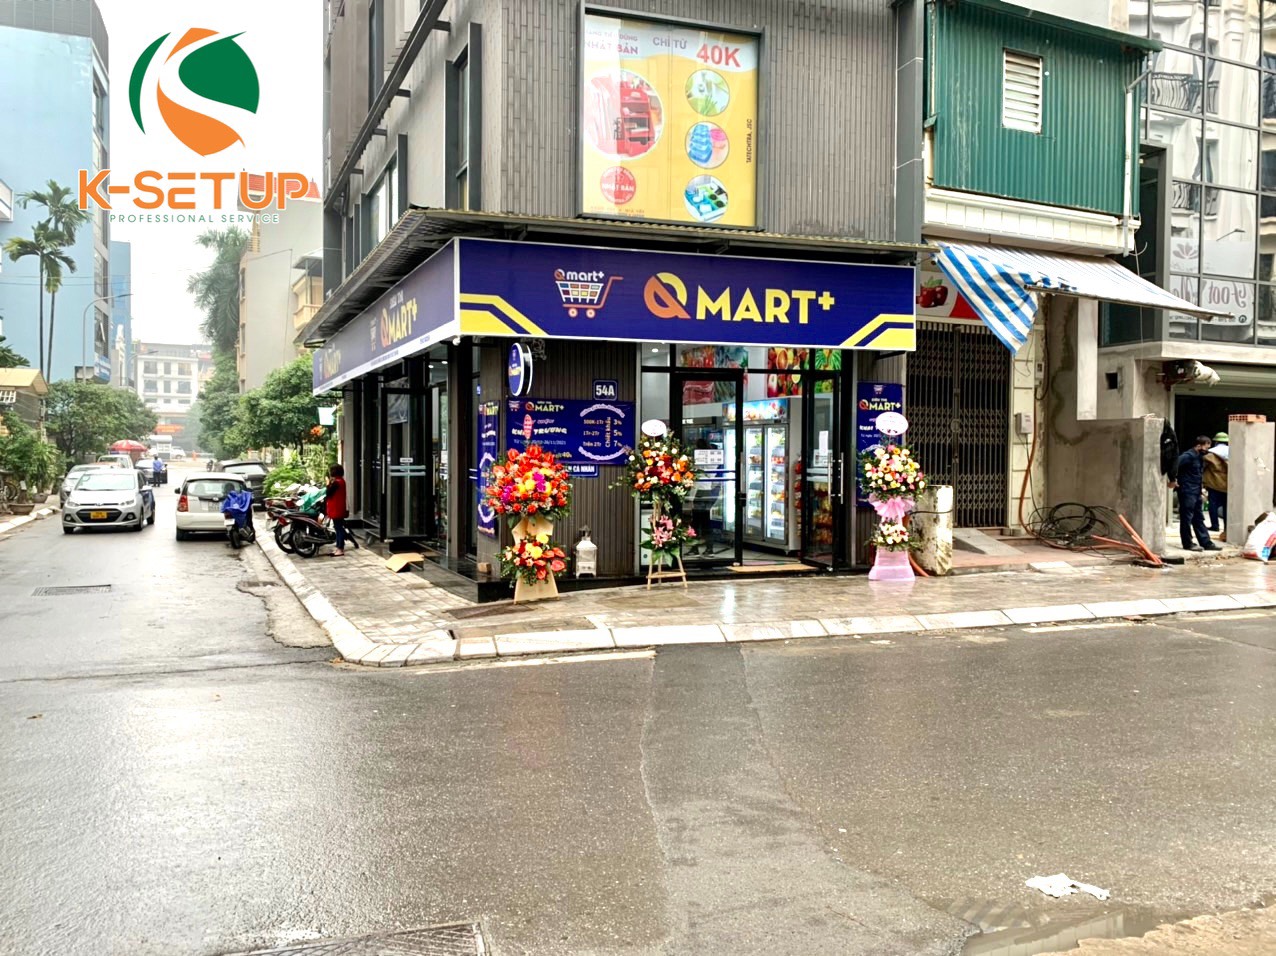 Chính thức khai trương siêu thị Q Mart+ tại Lạc Long Quân - Hà Nội - Công ty thiết kế setup siêu thị K-setup